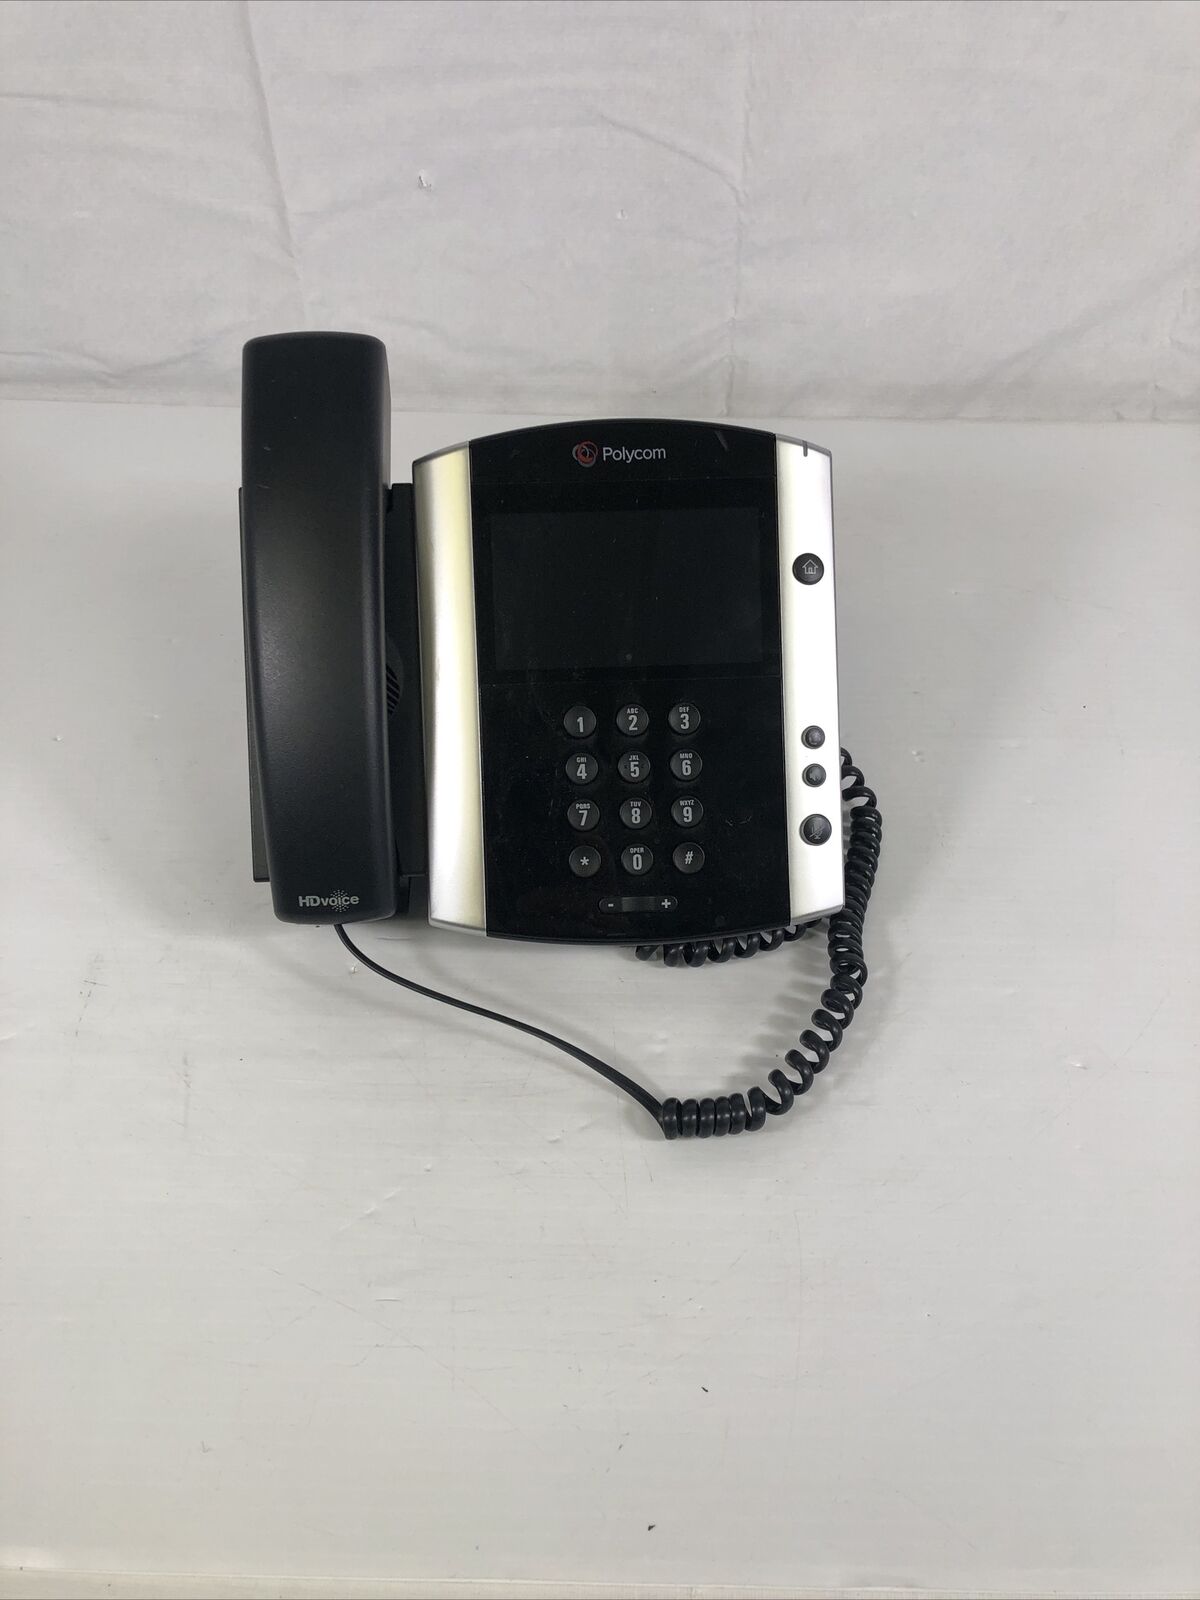 Polycom VVX 601 IP GIG Phone 2200-48600-025 VVX601 POE (Grade C)